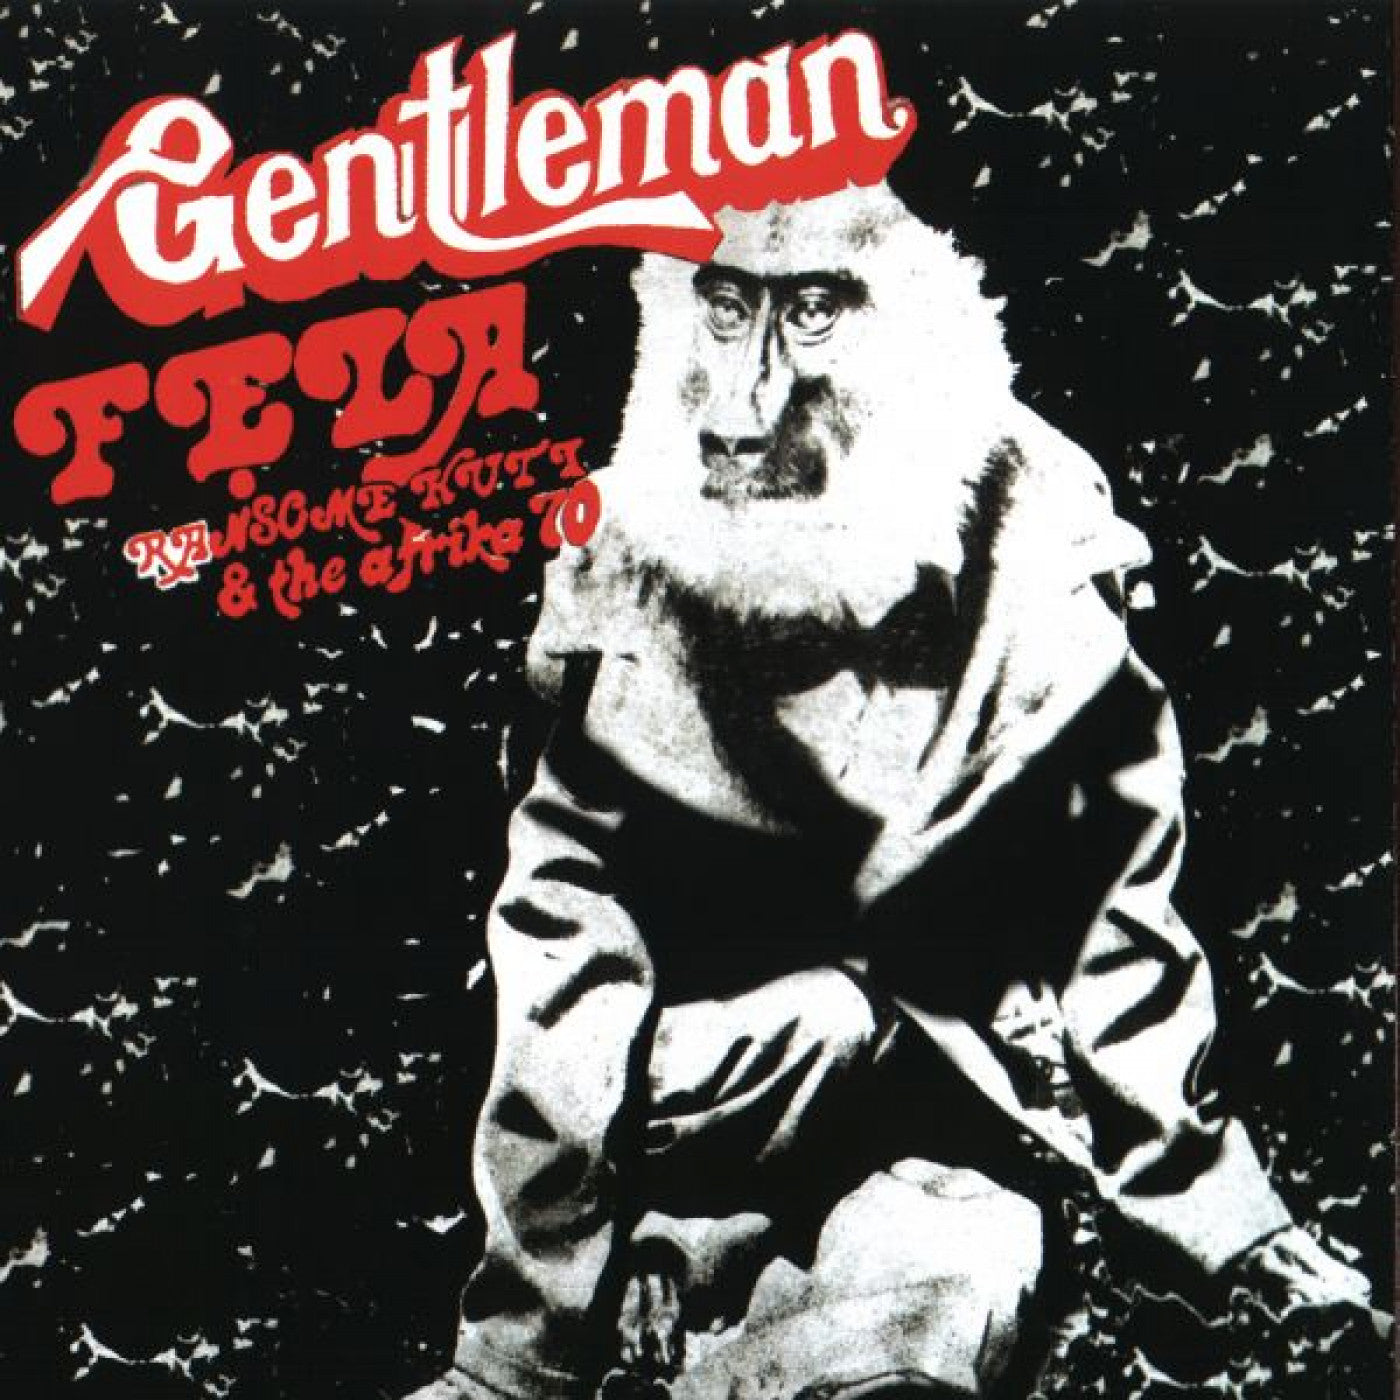 Fela Kuti - Gentleman (50th Anniversary) [Igbo Smoke Vinyl]